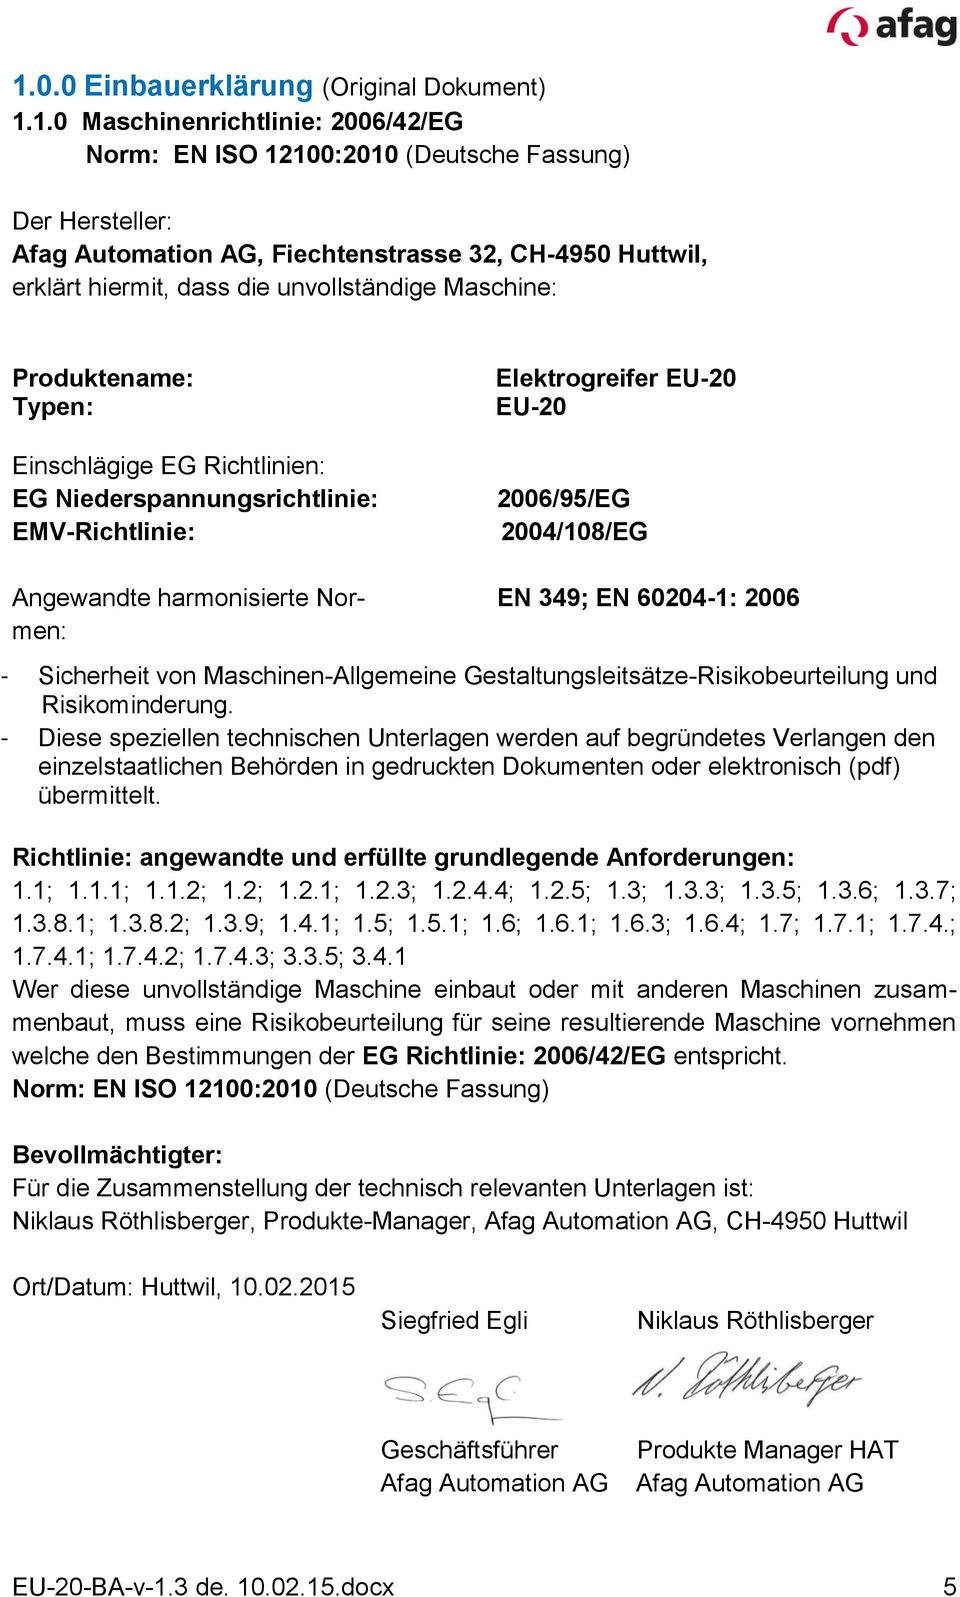 Angewandte harmonisierte Normen: EN 349; EN 60204-1: 2006 - Sicherheit von Maschinen-Allgemeine Gestaltungsleitsätze-Risikobeurteilung und Risikominderung.